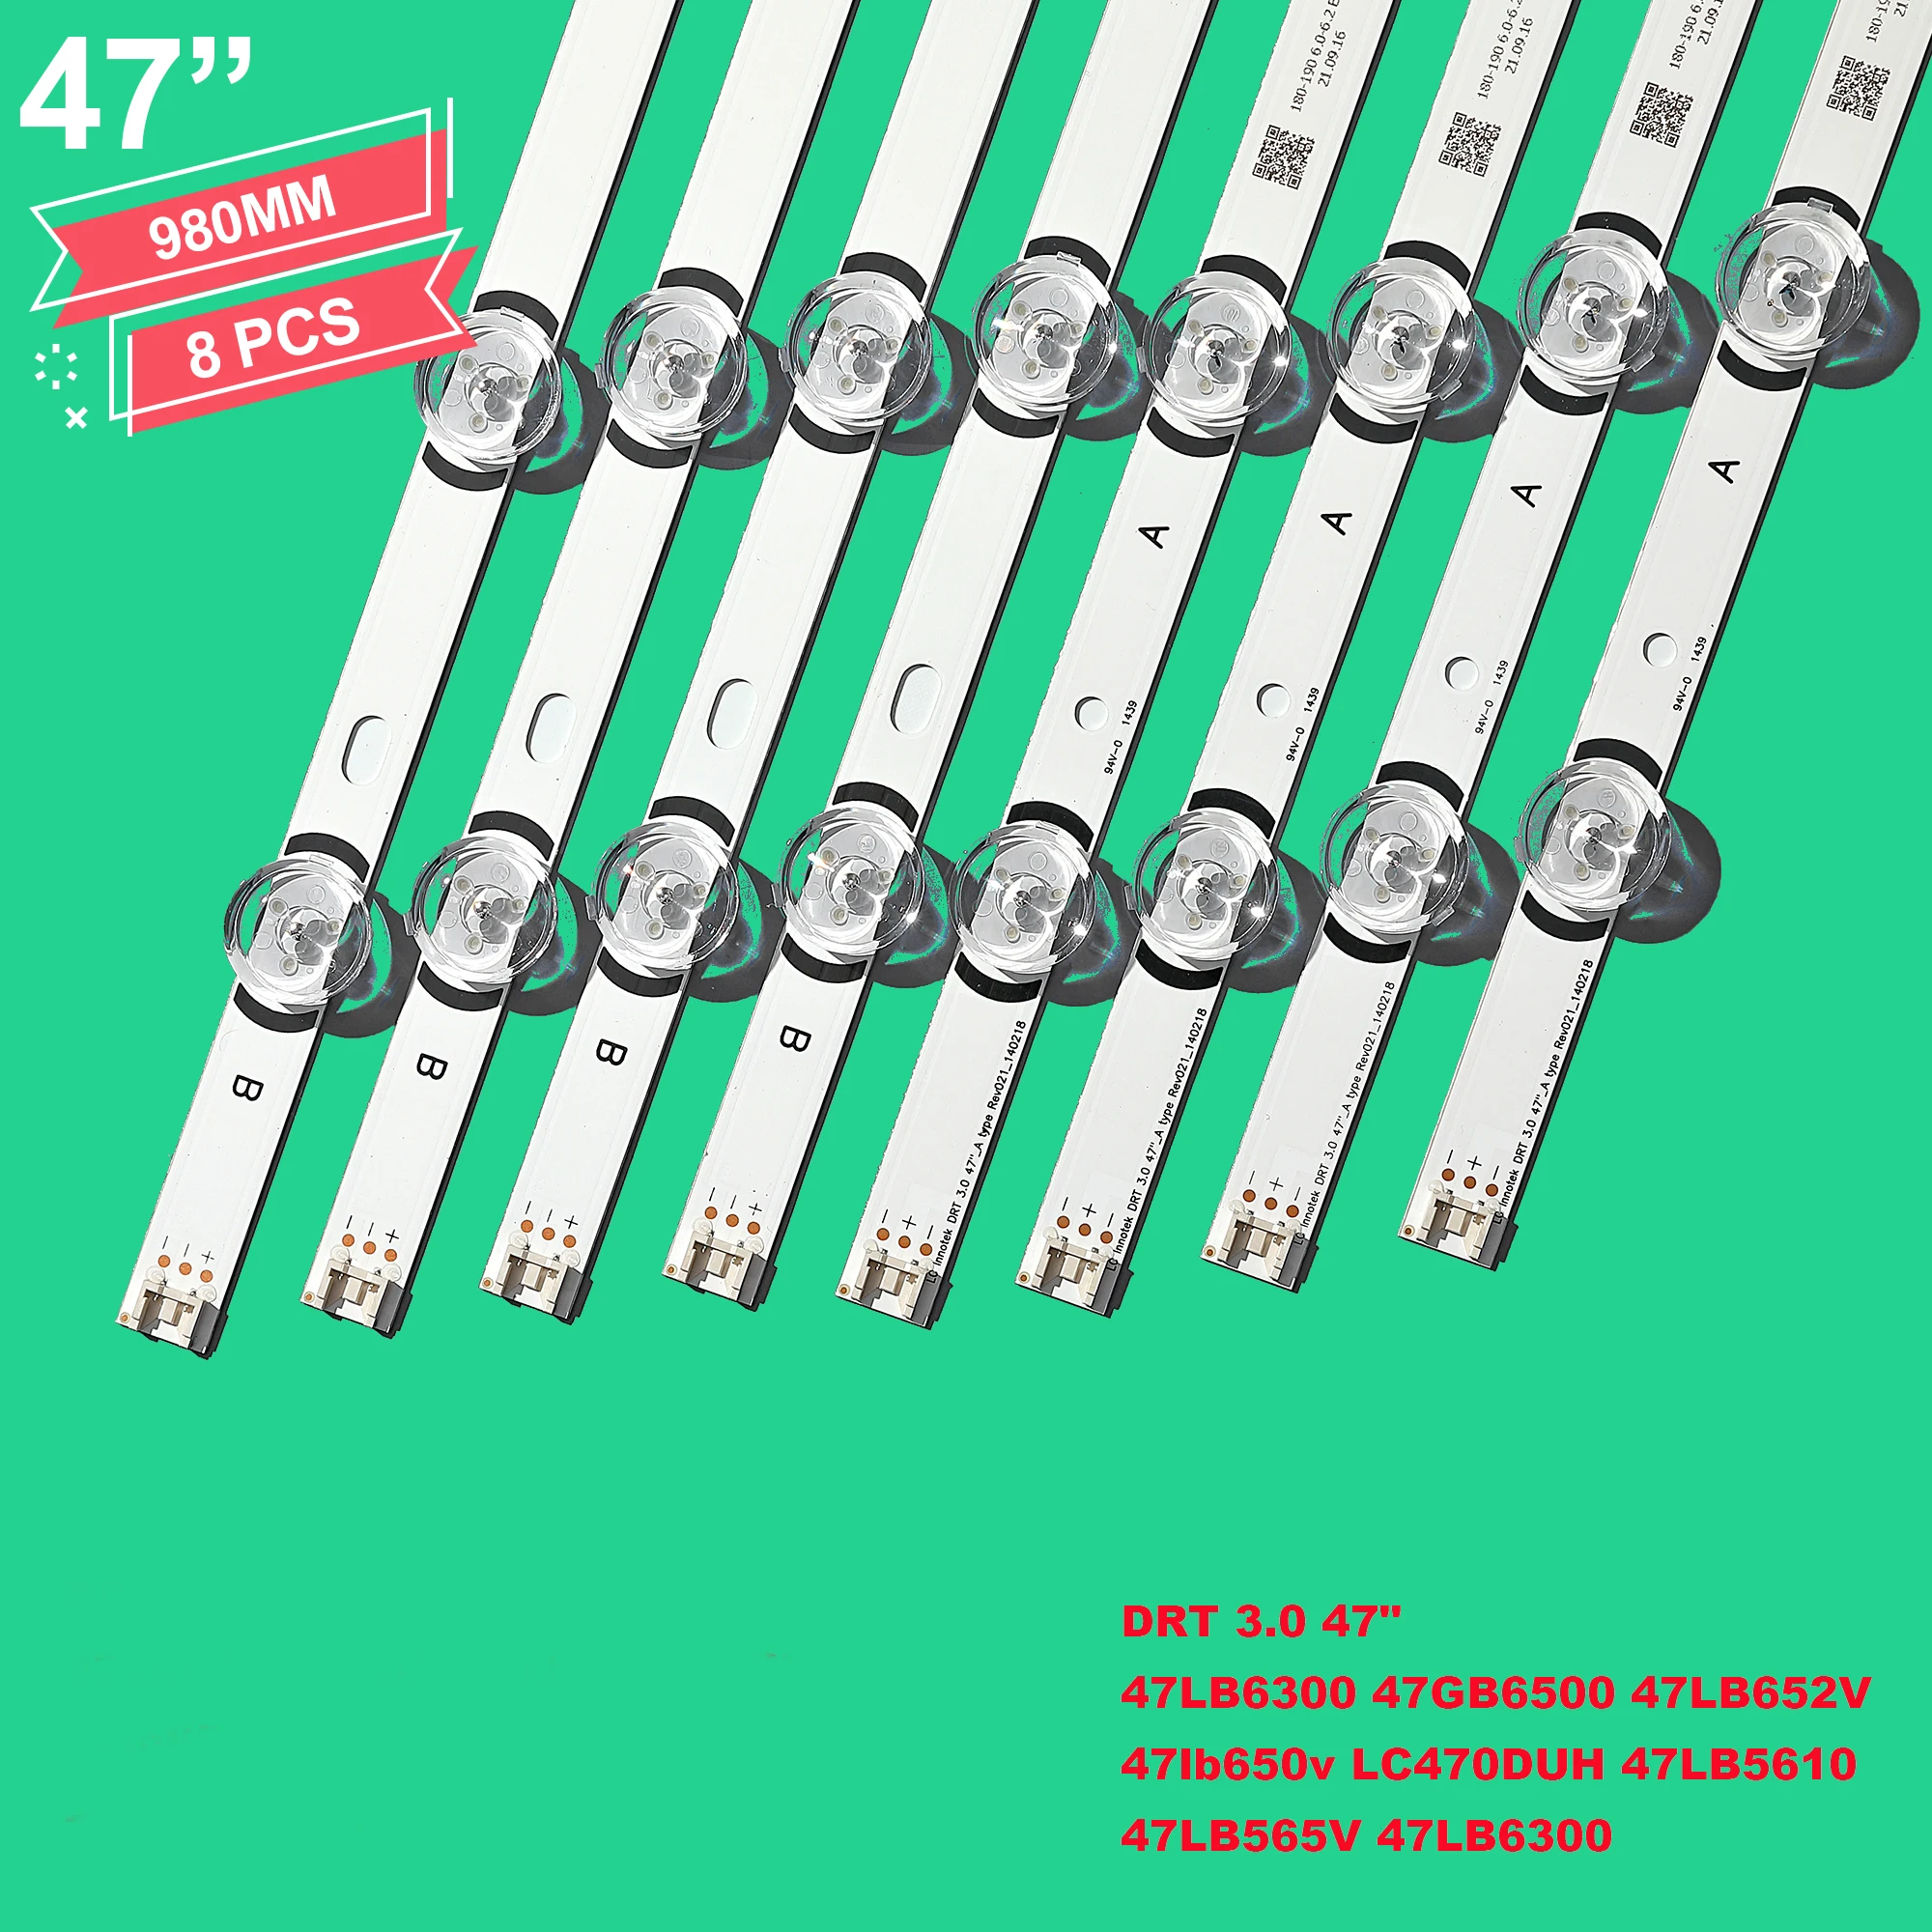 6SET=48PCS 98cm 9leds For LG Led backlight   47 inch TV innotek DRT3.0 47